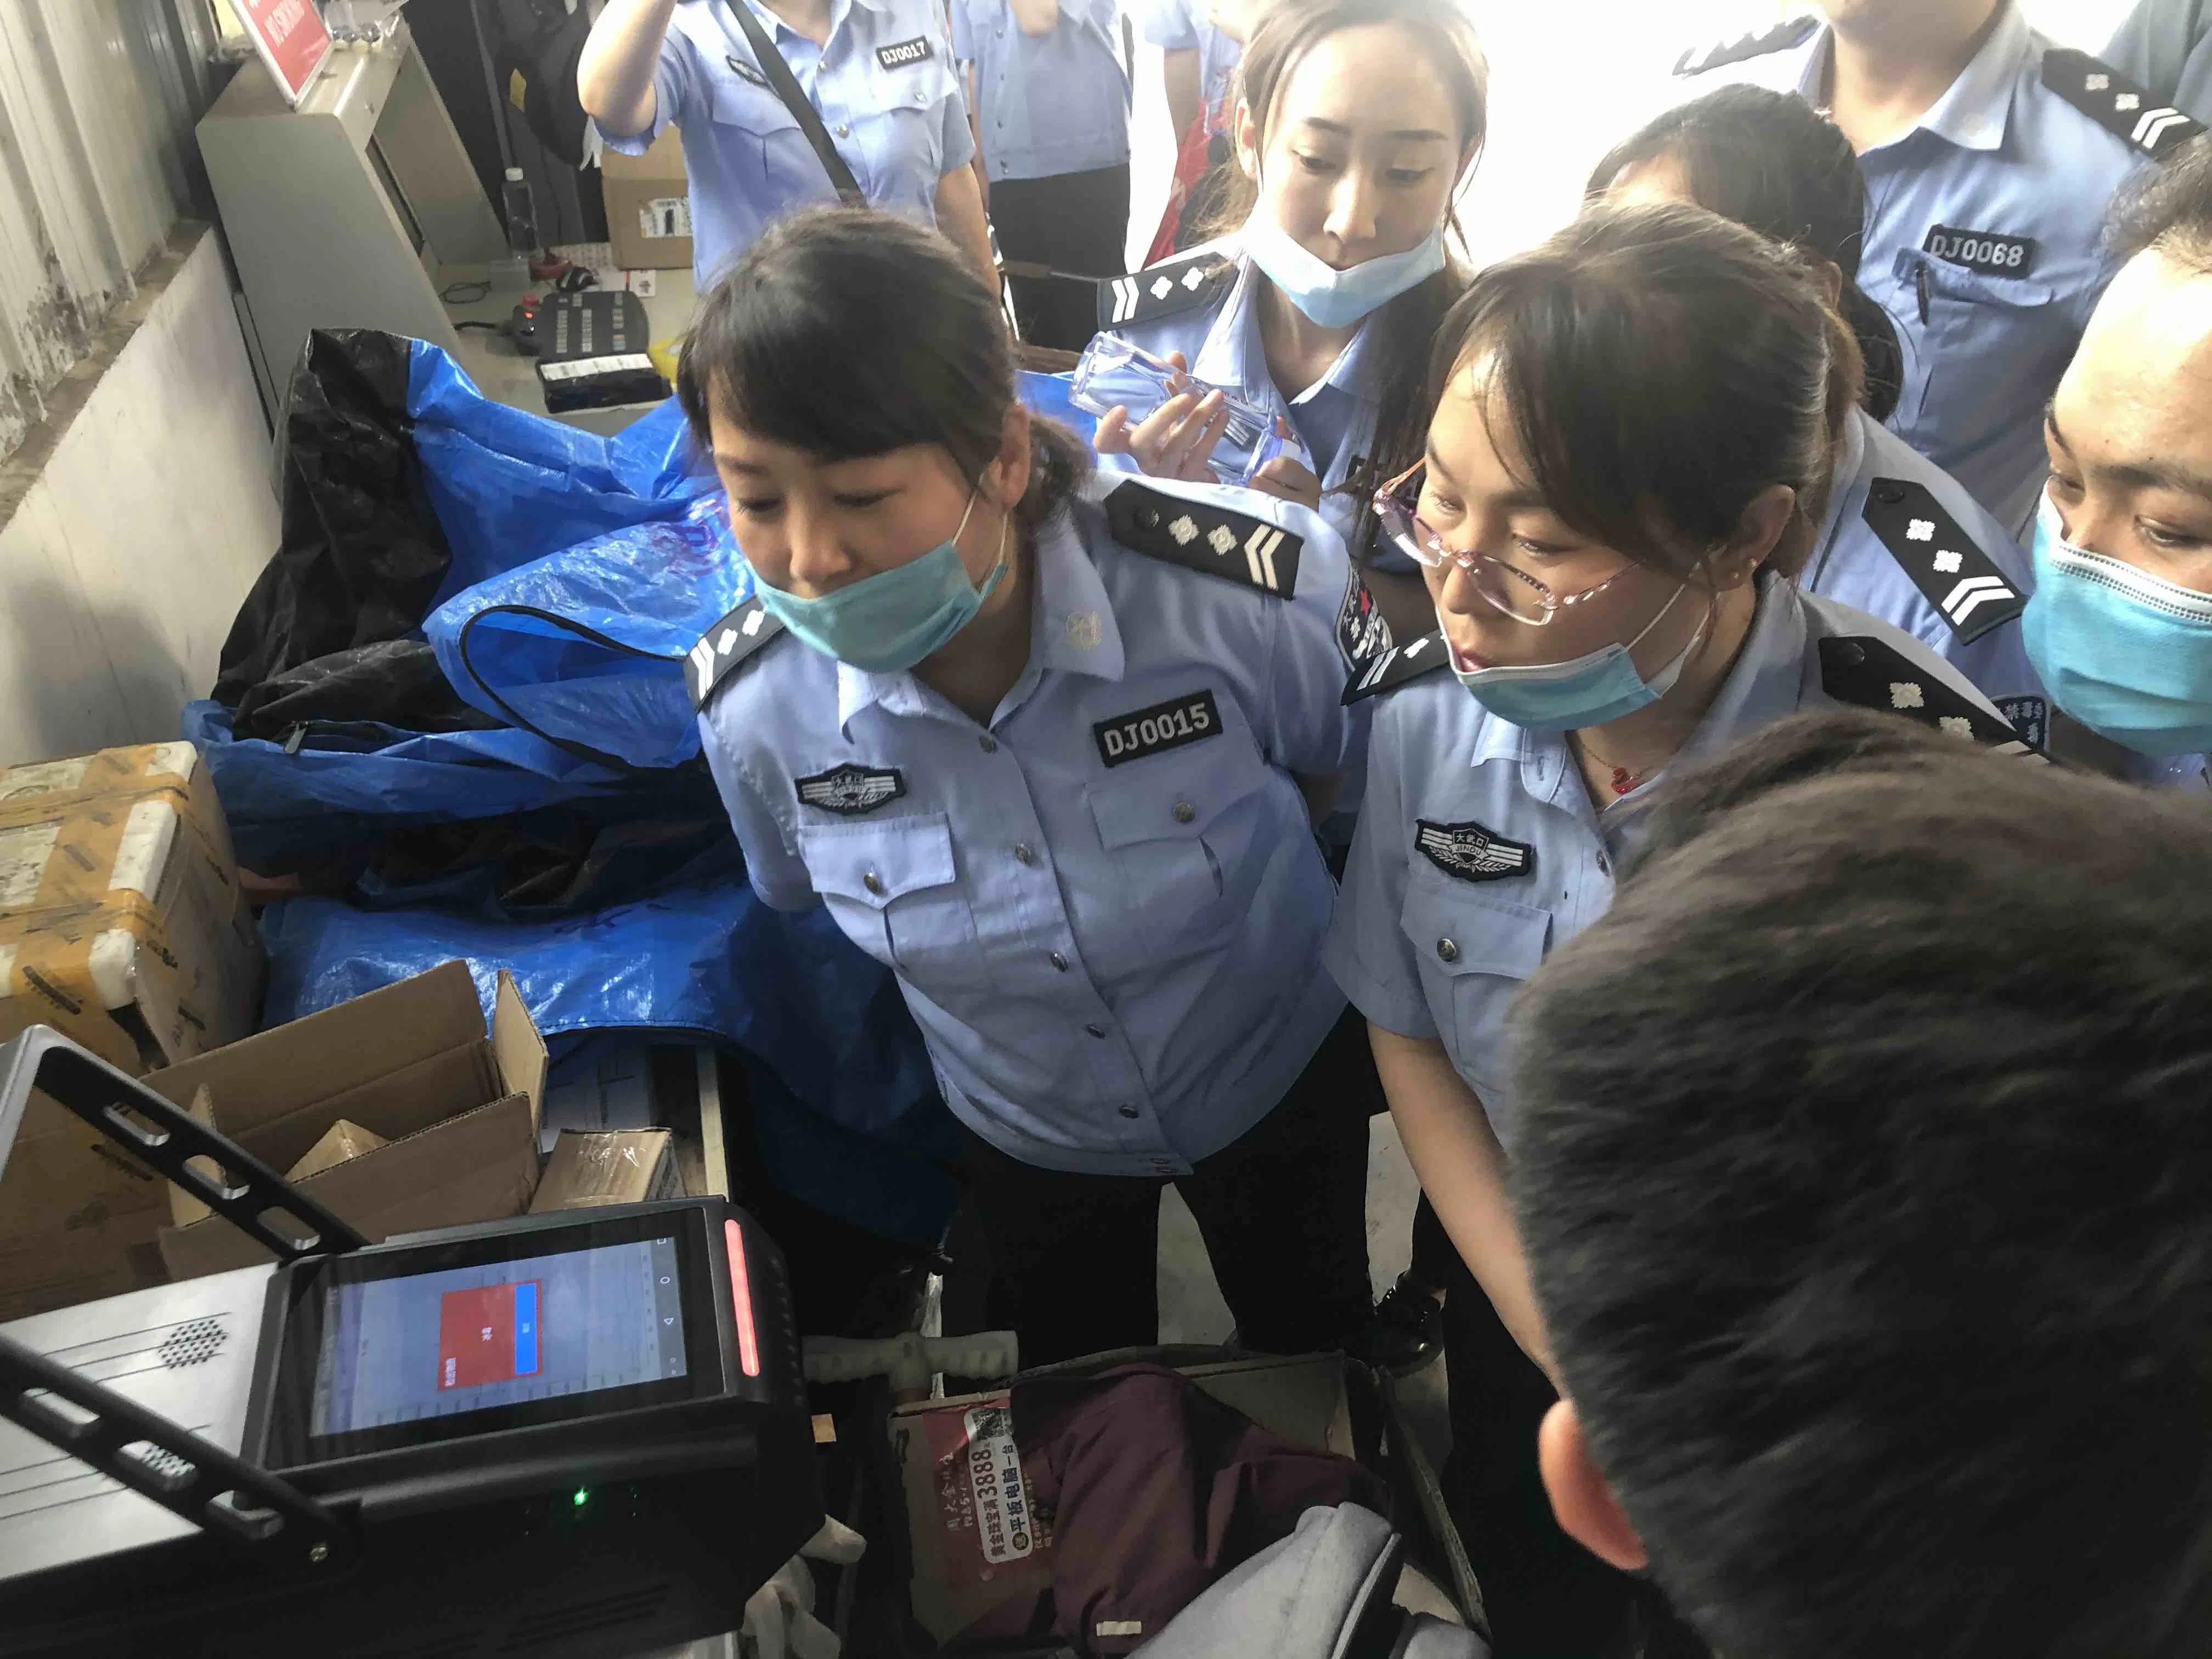 Detetor portátil de drogas e explosivos de modo duplo para inspeção de segurança No Aeroporto